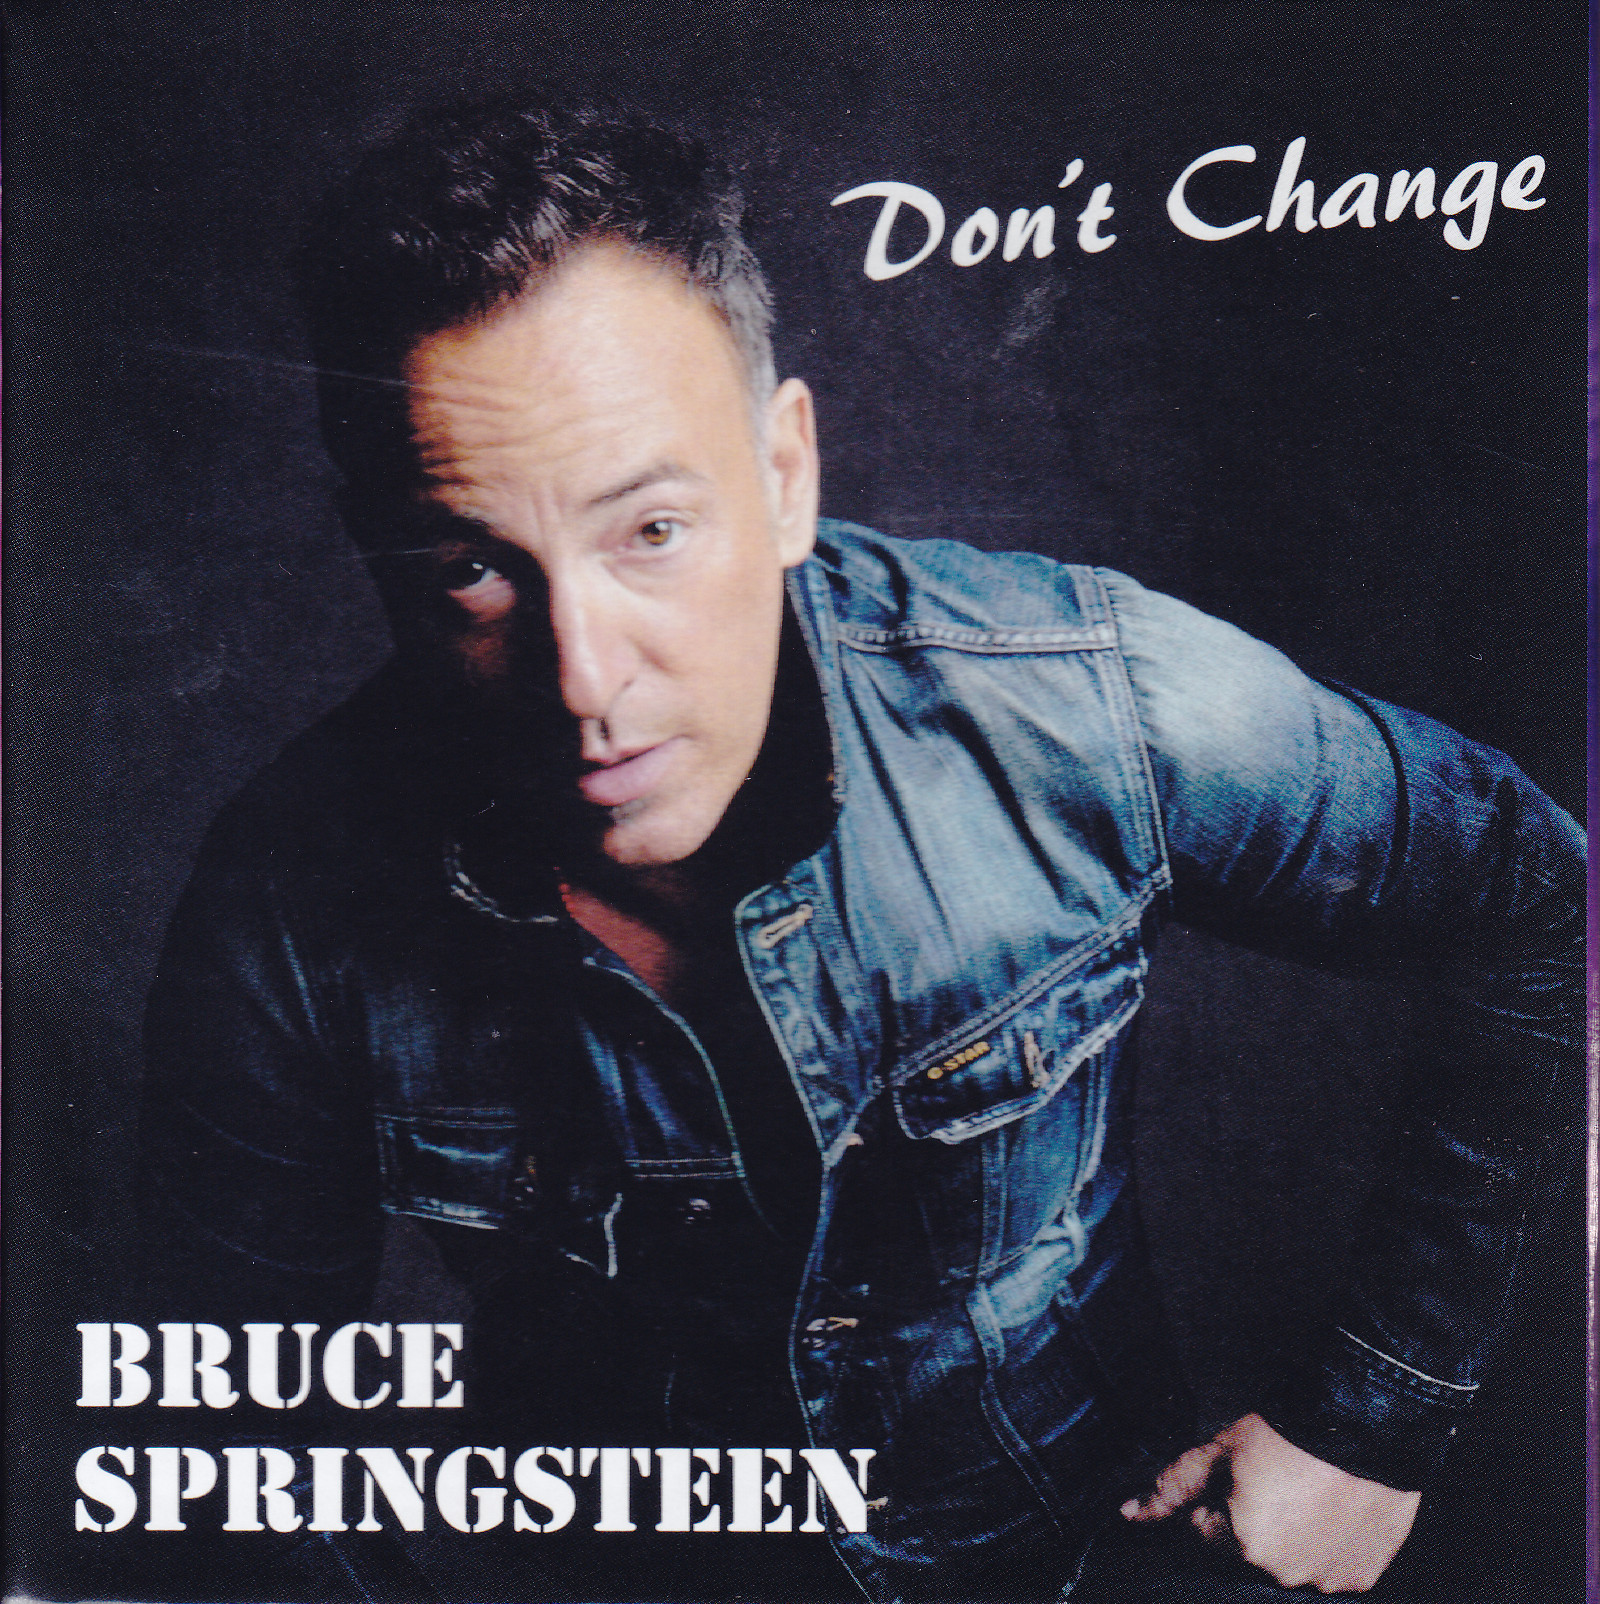 Bruce Springsteen / Dont Change / 12CD Box Set + 1Bonus DVD